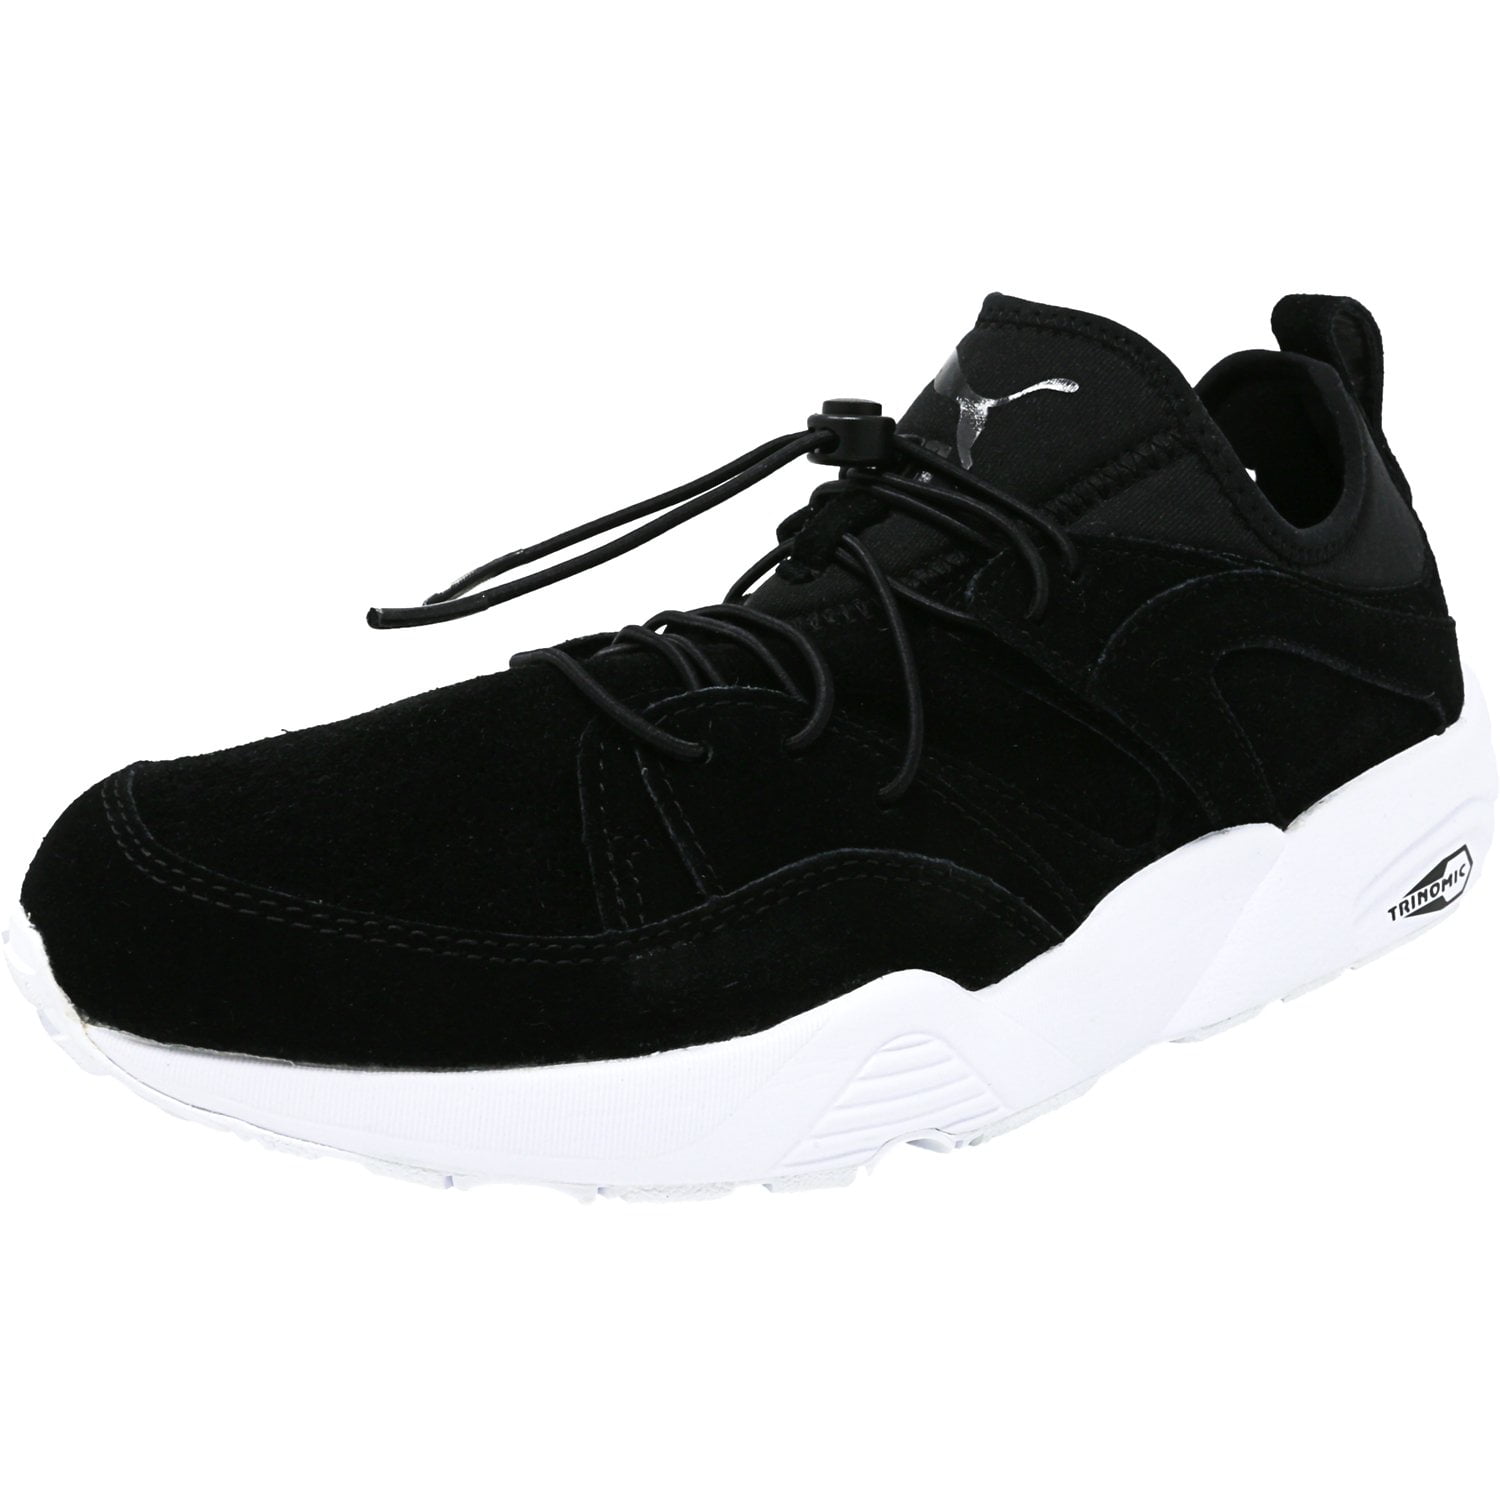 Puma Men's Blaze Glory Soft Black Ankle-High Suede Shoe - 9.5M - Walmart.com